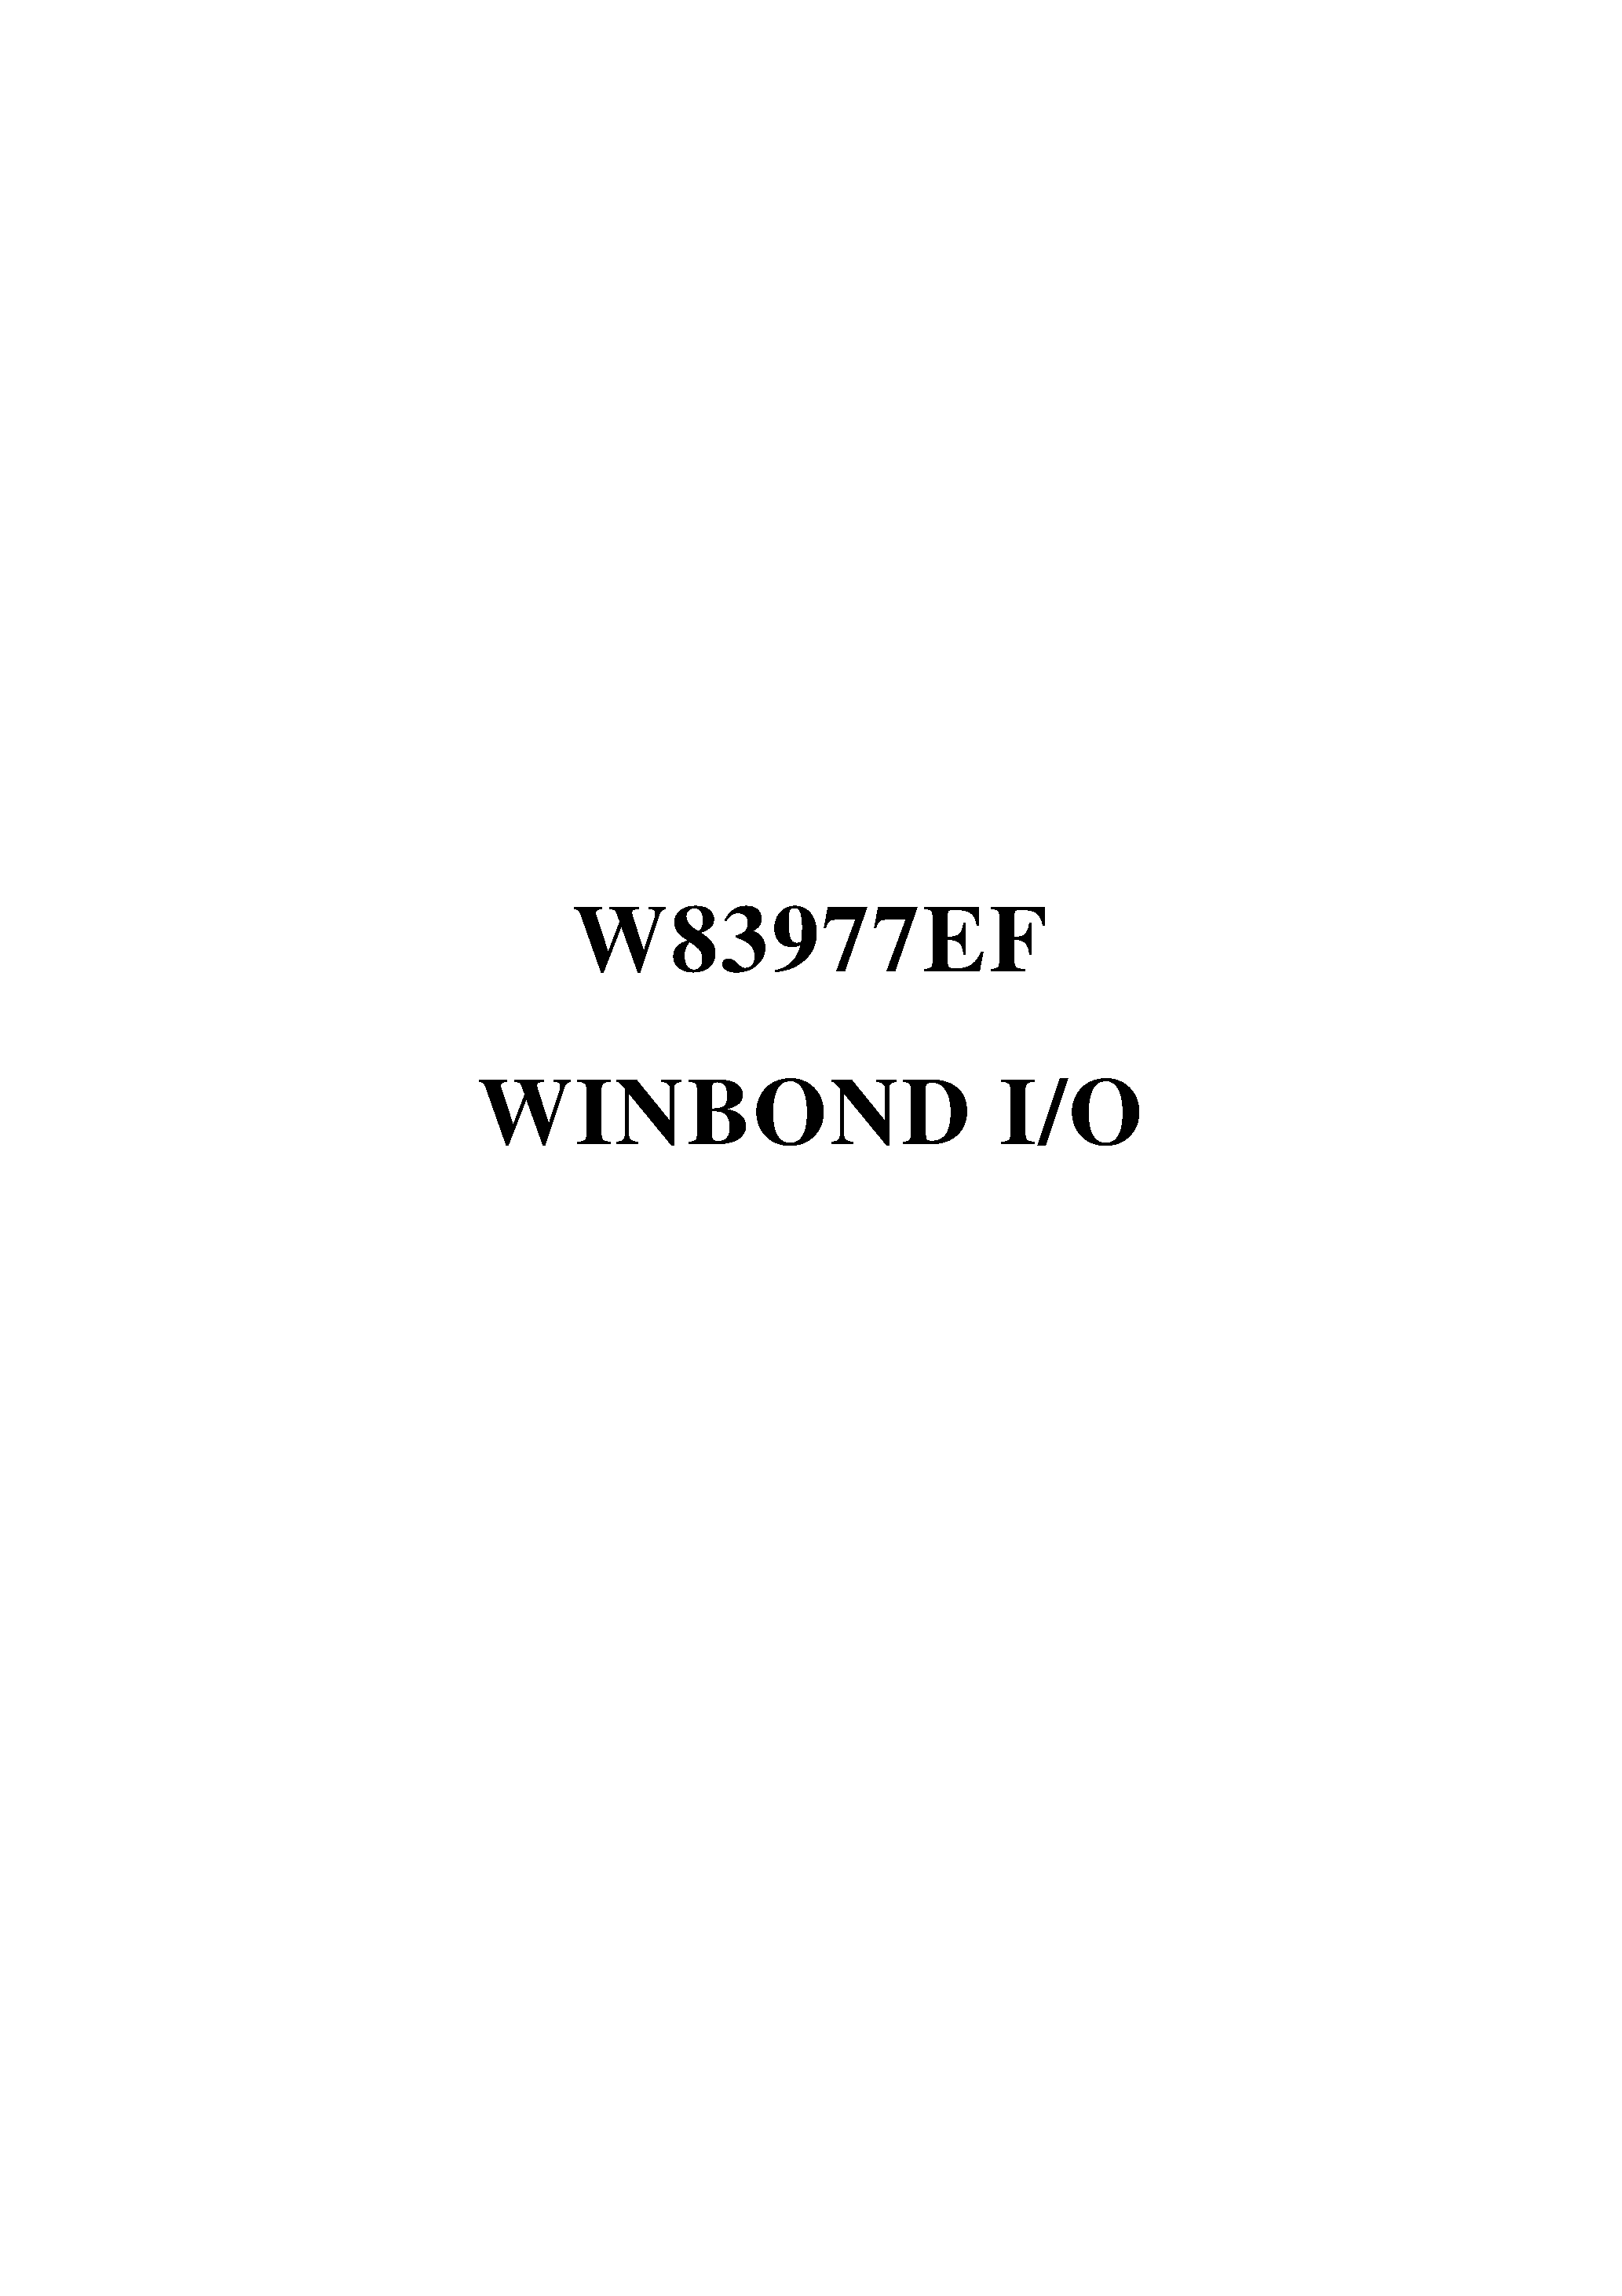 Datasheet W83977EF - WINBOND I/O page 1